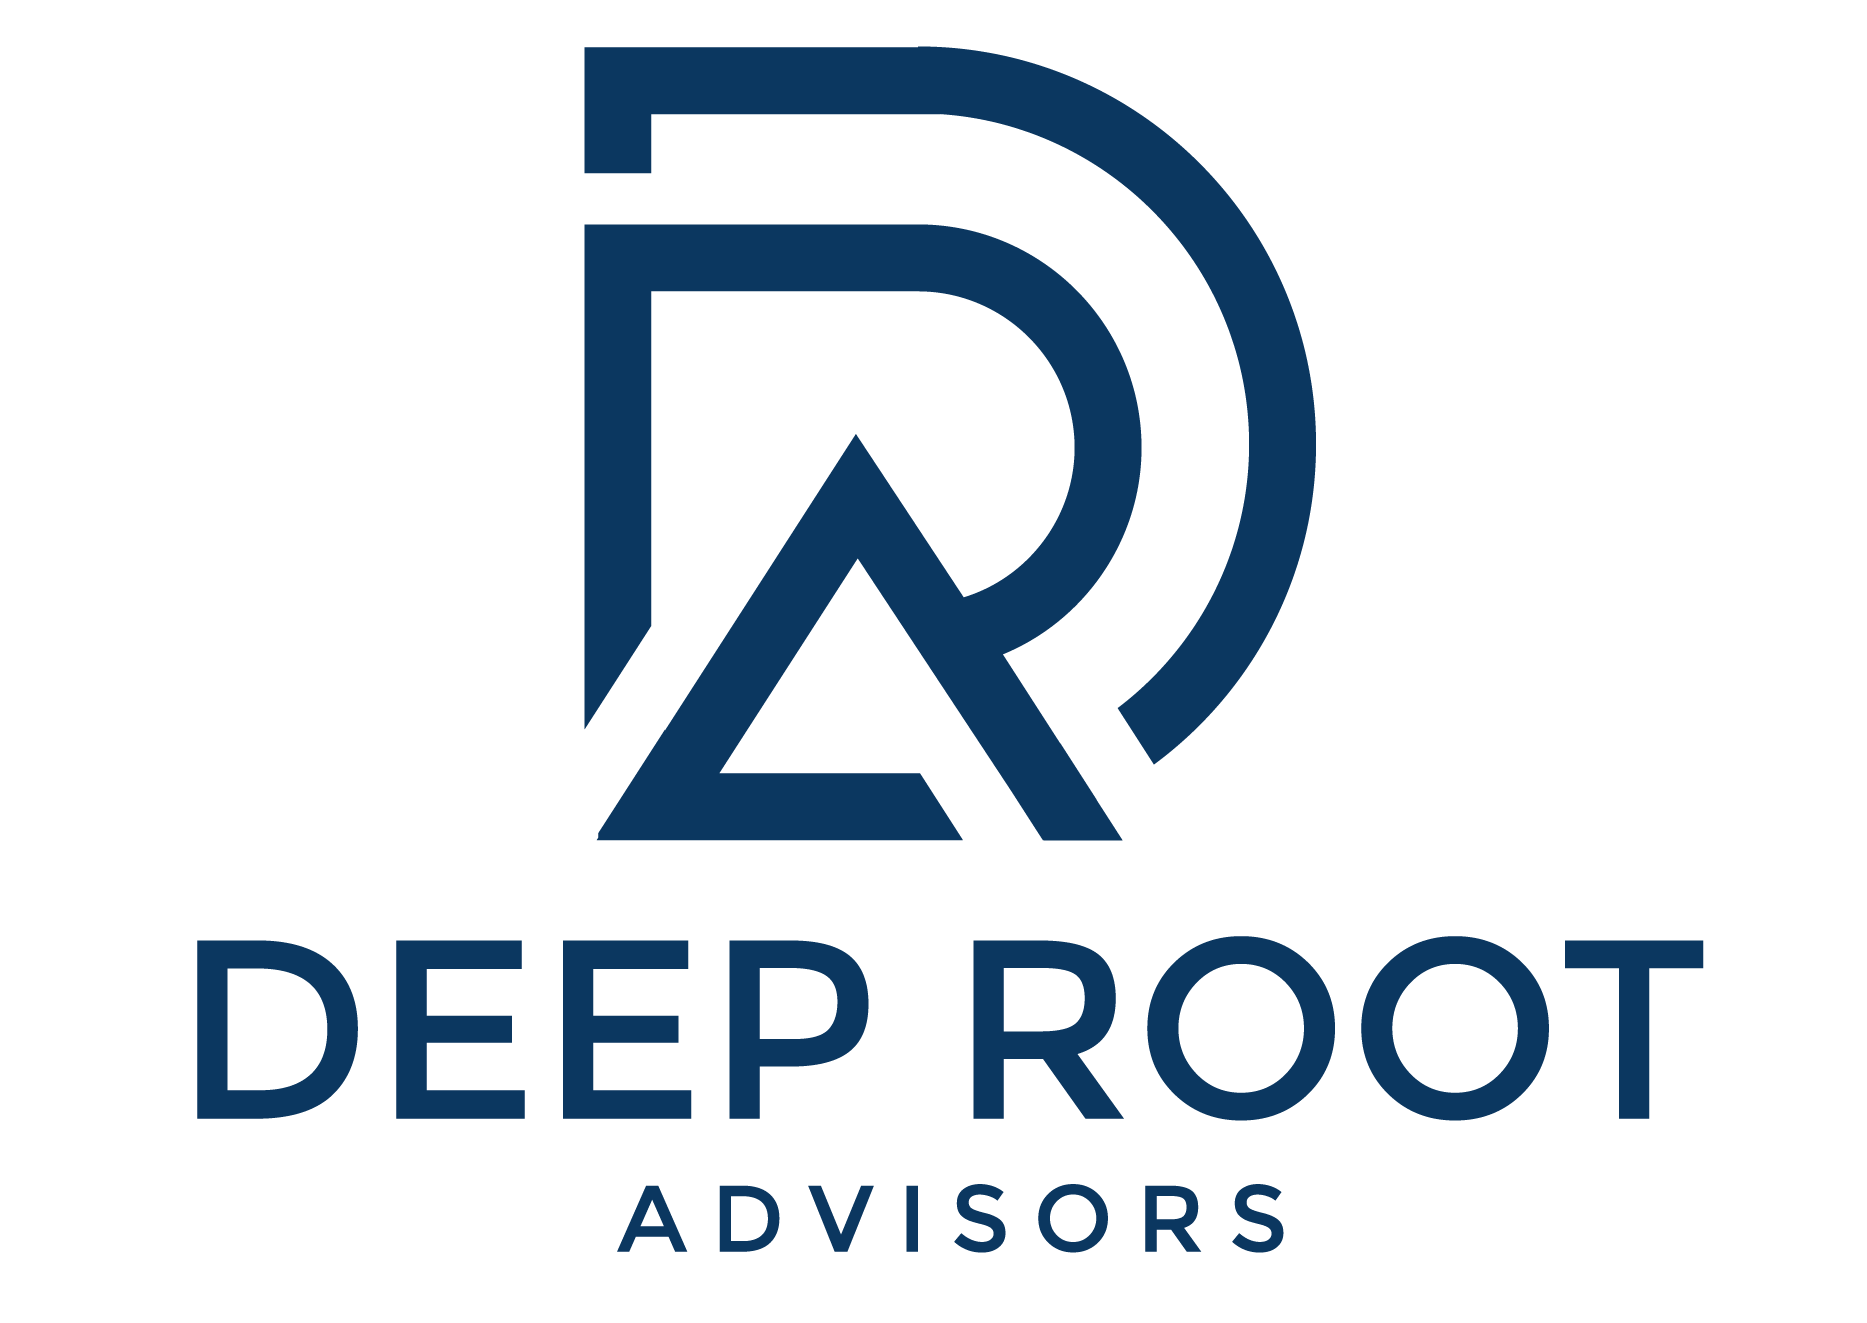 Deep Root Advisors